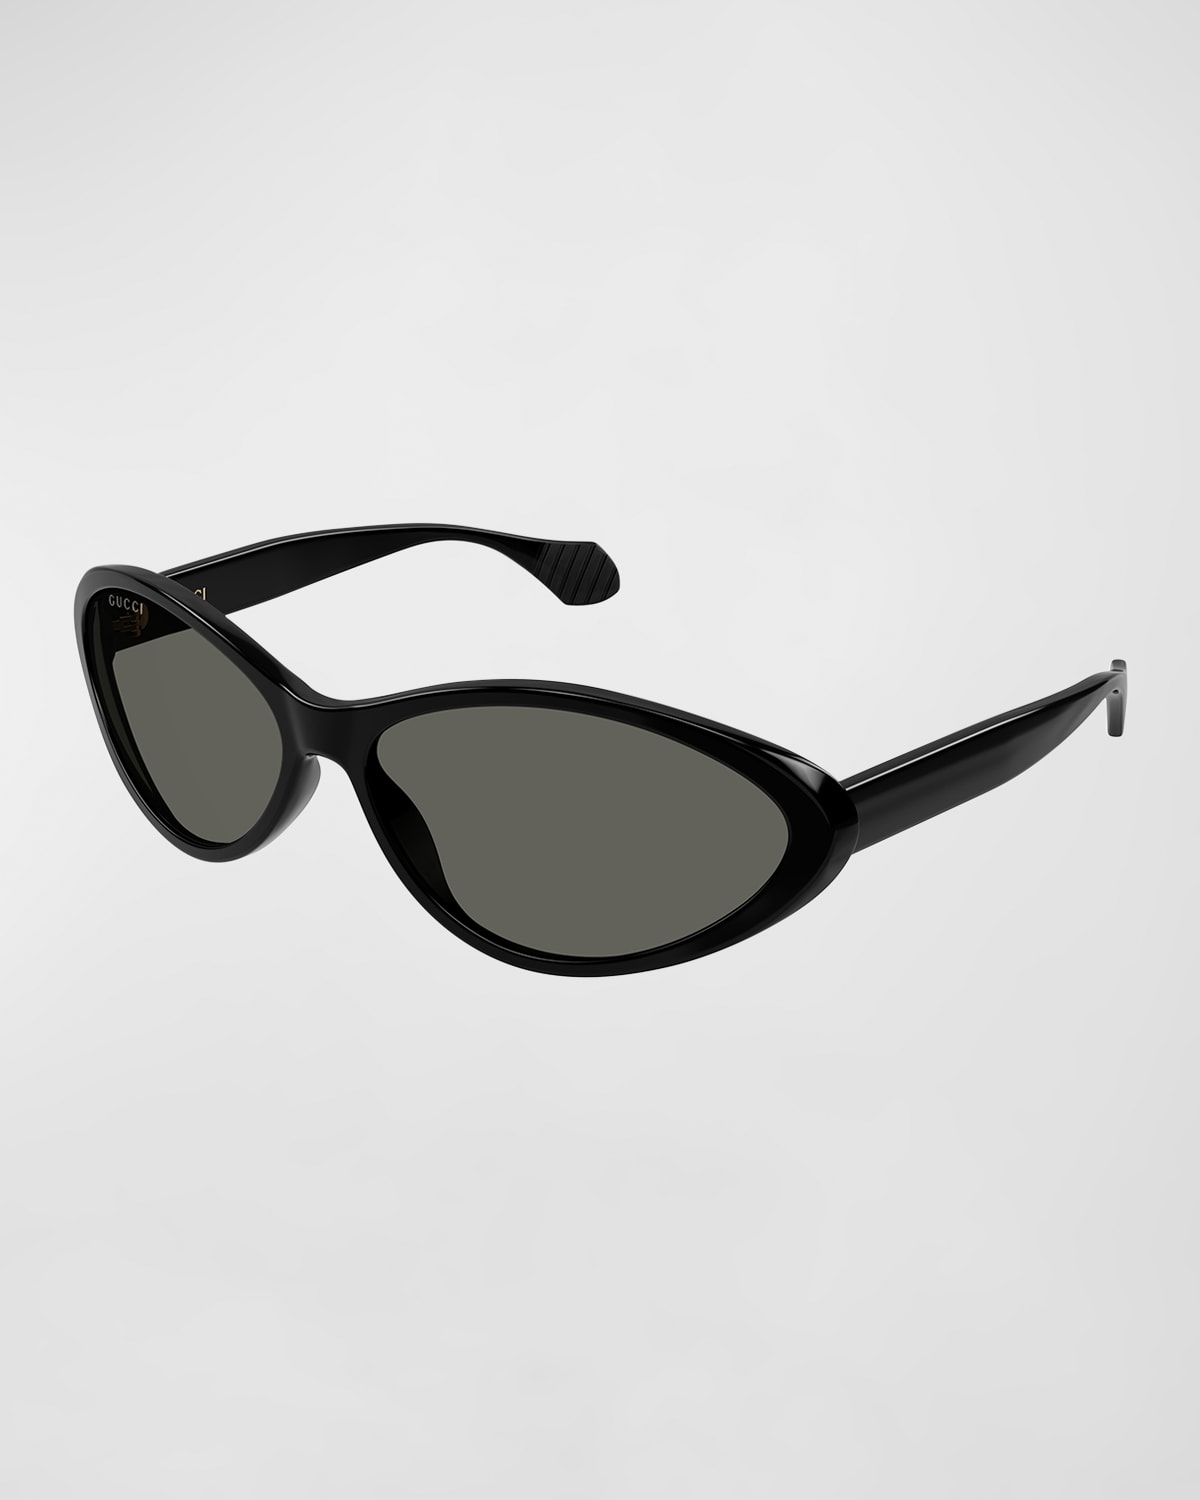 Gucci Women's Fashion Show 67mm Oval Sunglasses In 002 Black